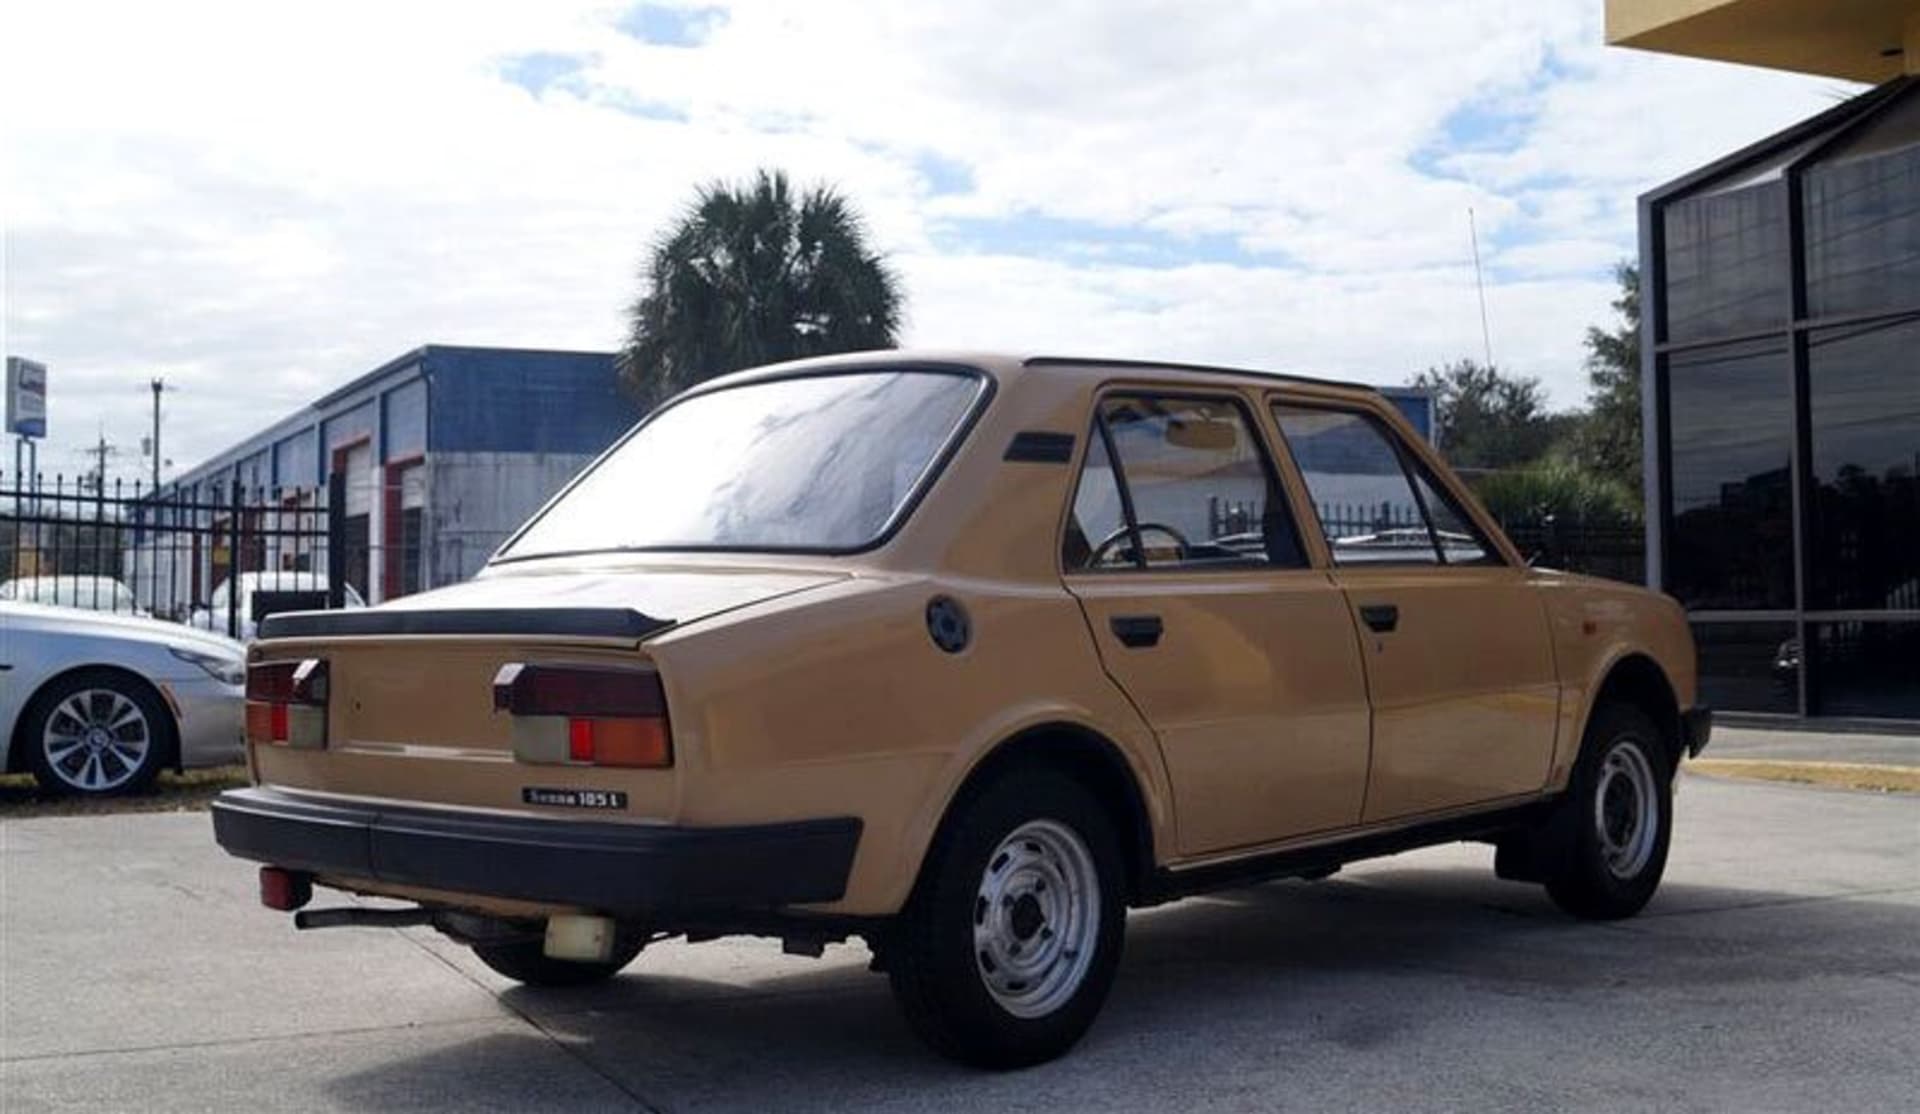 Škoda 105 L (1986).